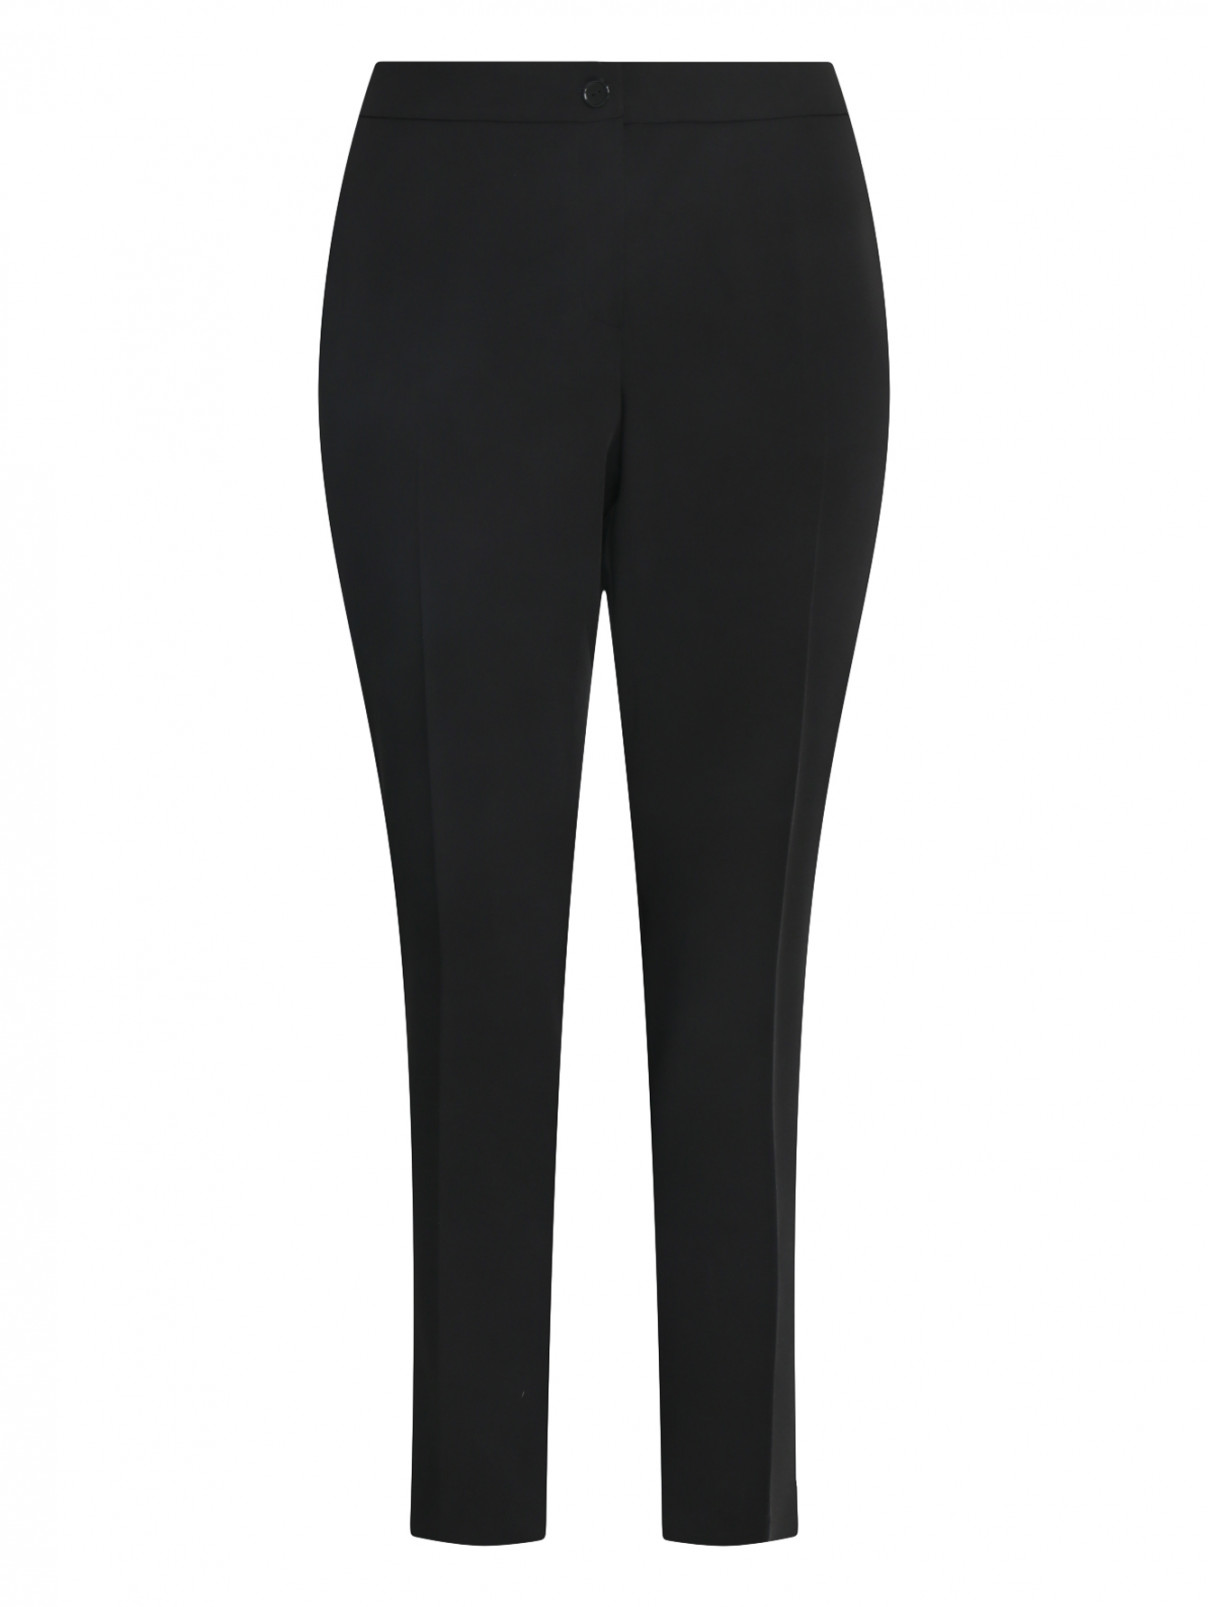 Укороченные брюки на резинке Persona by Marina Rinaldi  –  Общий вид  – Цвет:  Черный